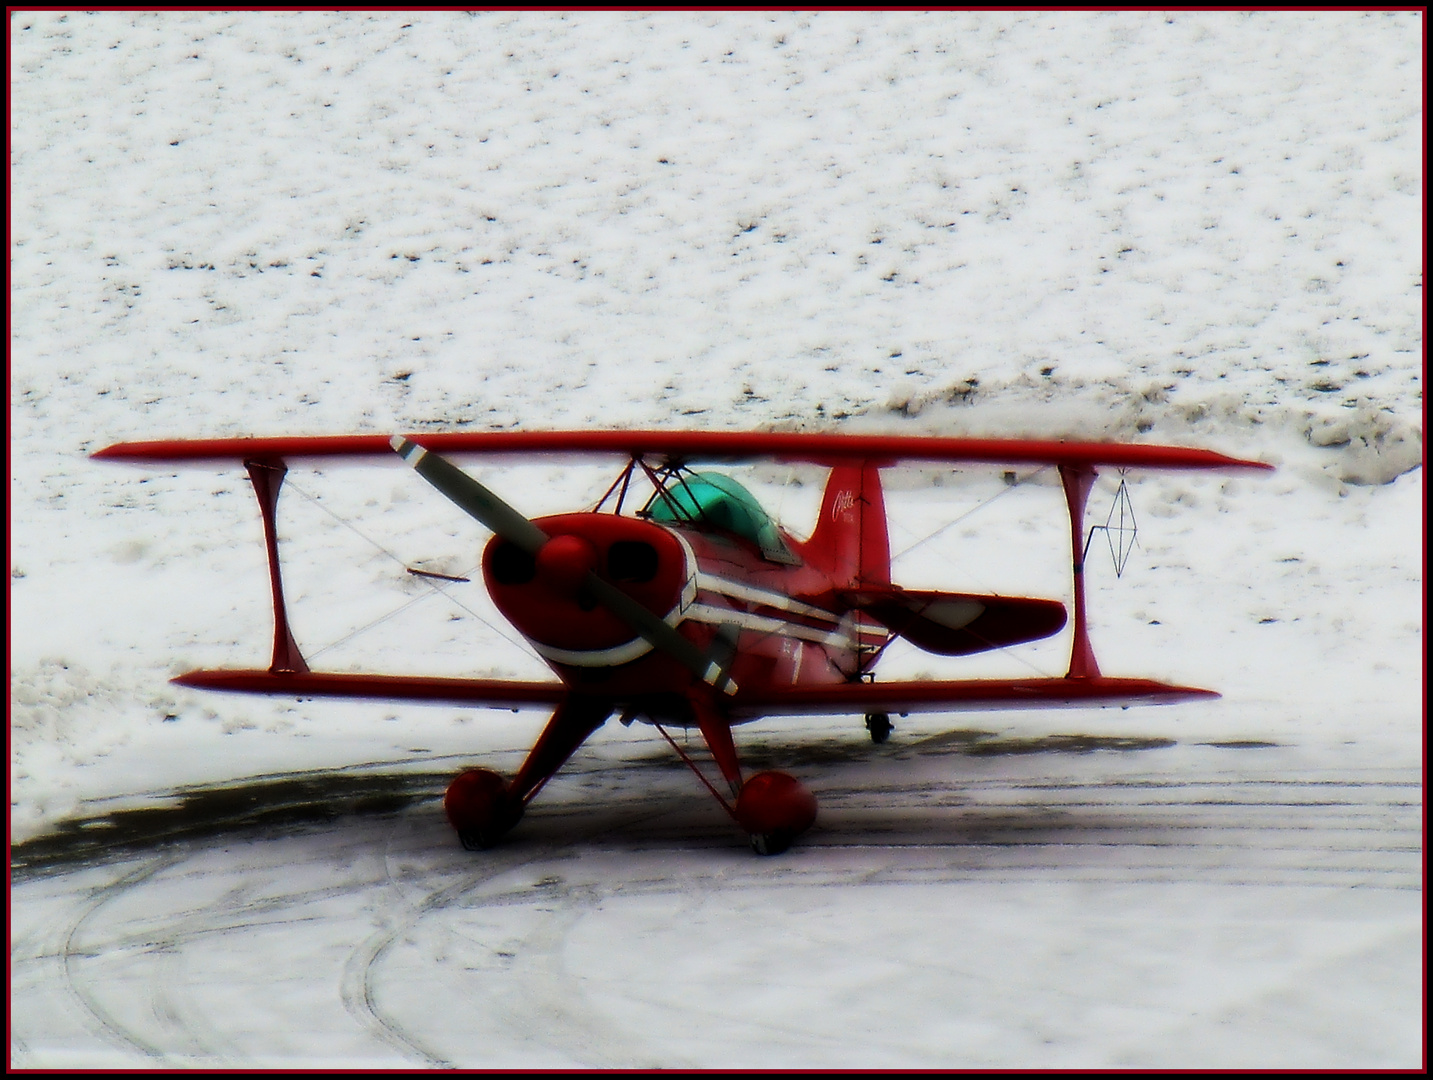 Rote Flugzeuge findet man auch im Schnee wieder!